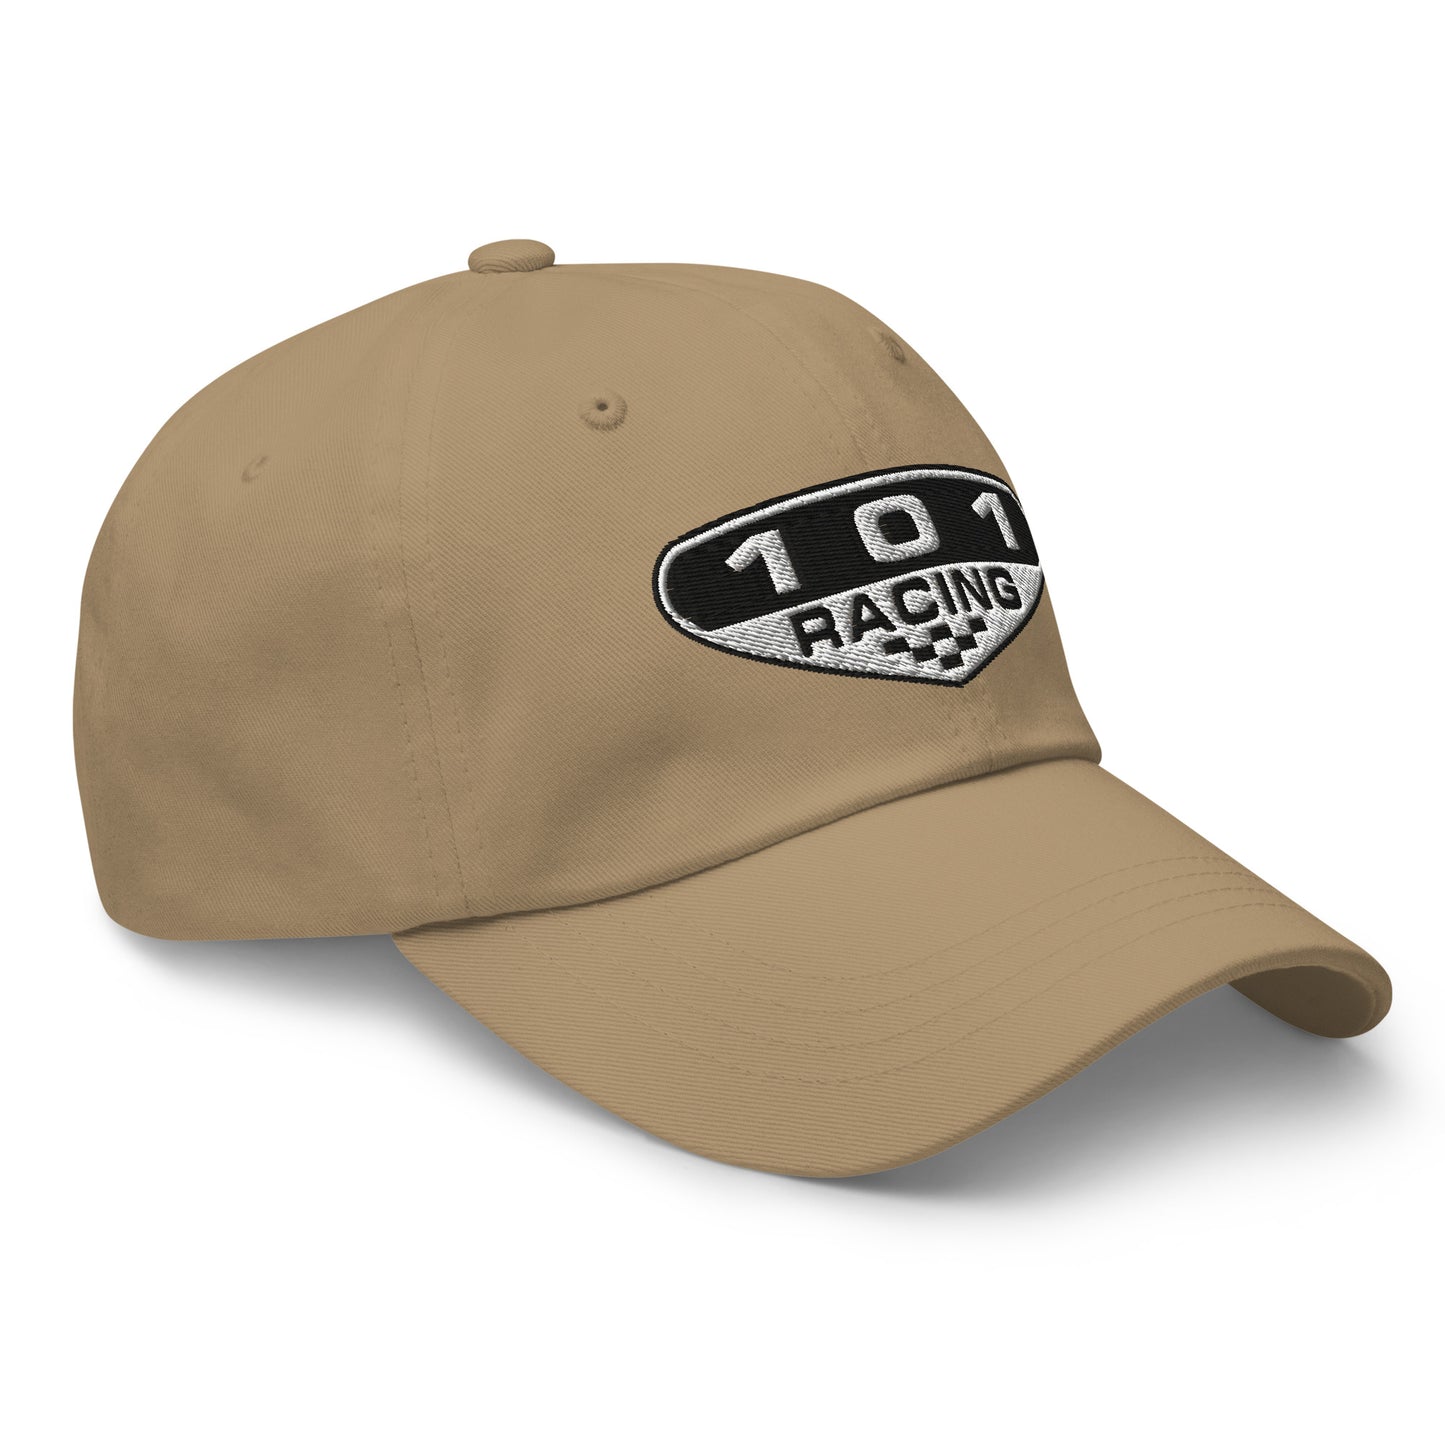 Jack Brown 101 Racing "Dad Hat"